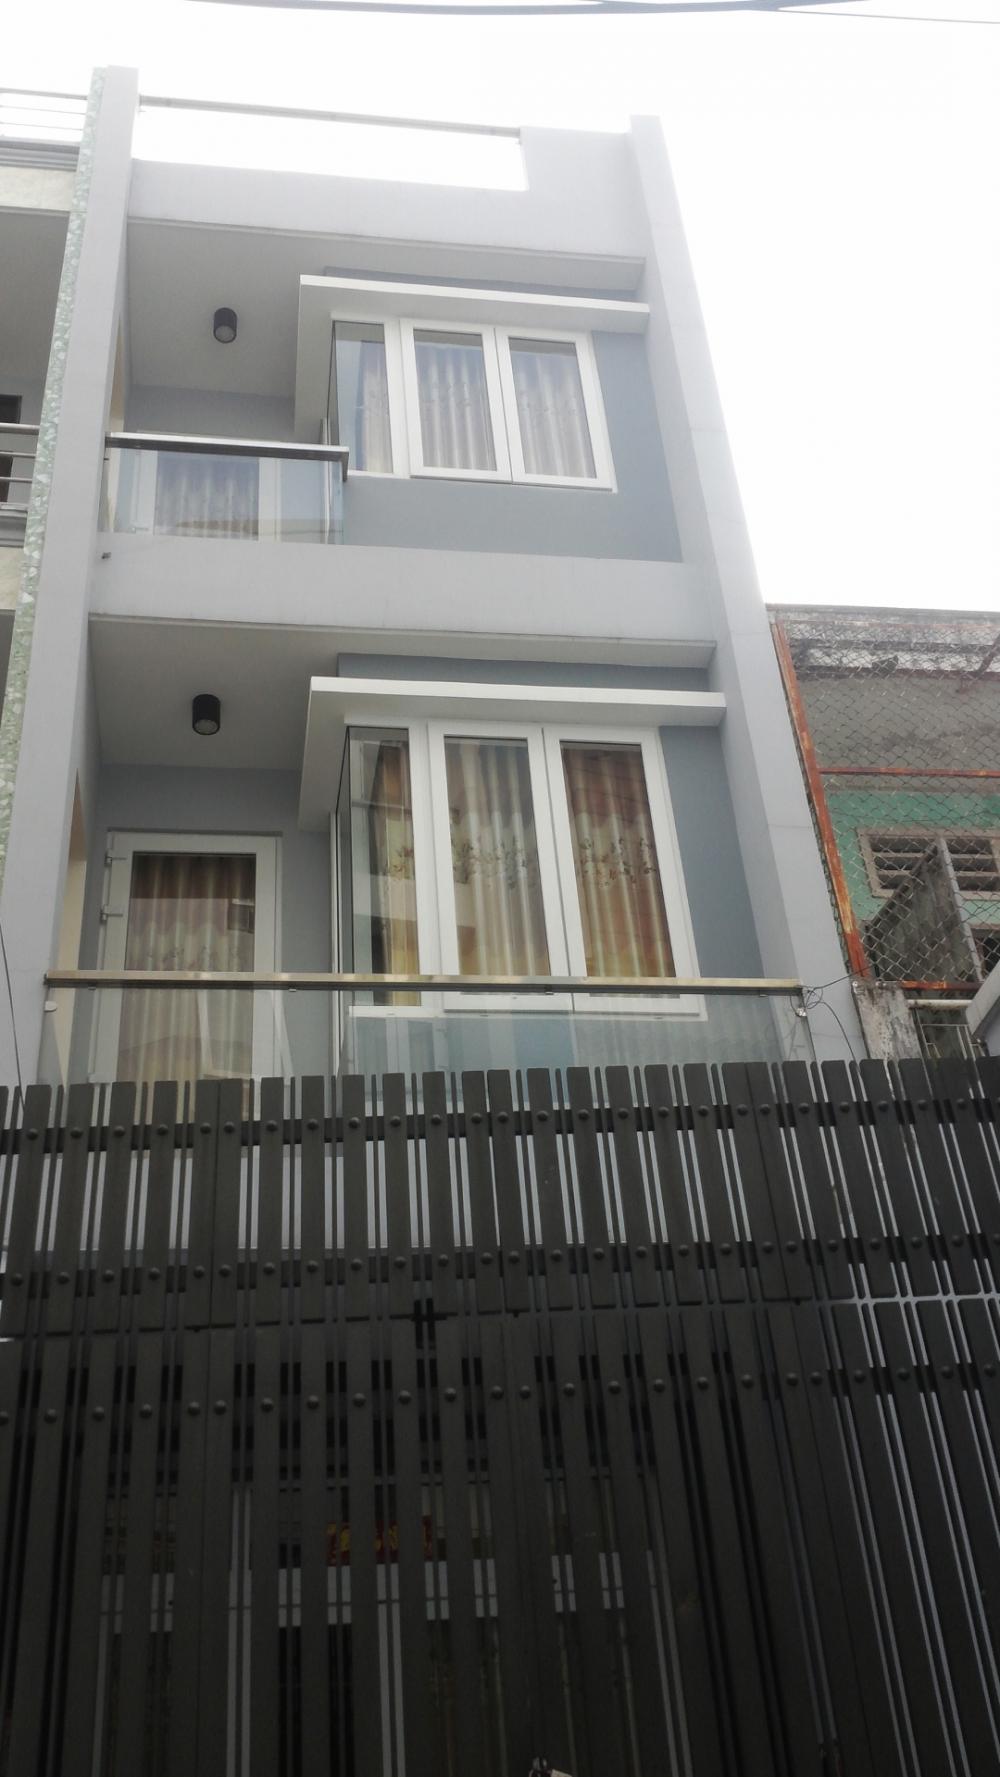 Bán nhà hẻm 8m sang trọng, Phường Tân Định, Quận 1, DTSD: 62m2, 4 PN, nhà mới, giá rẻ